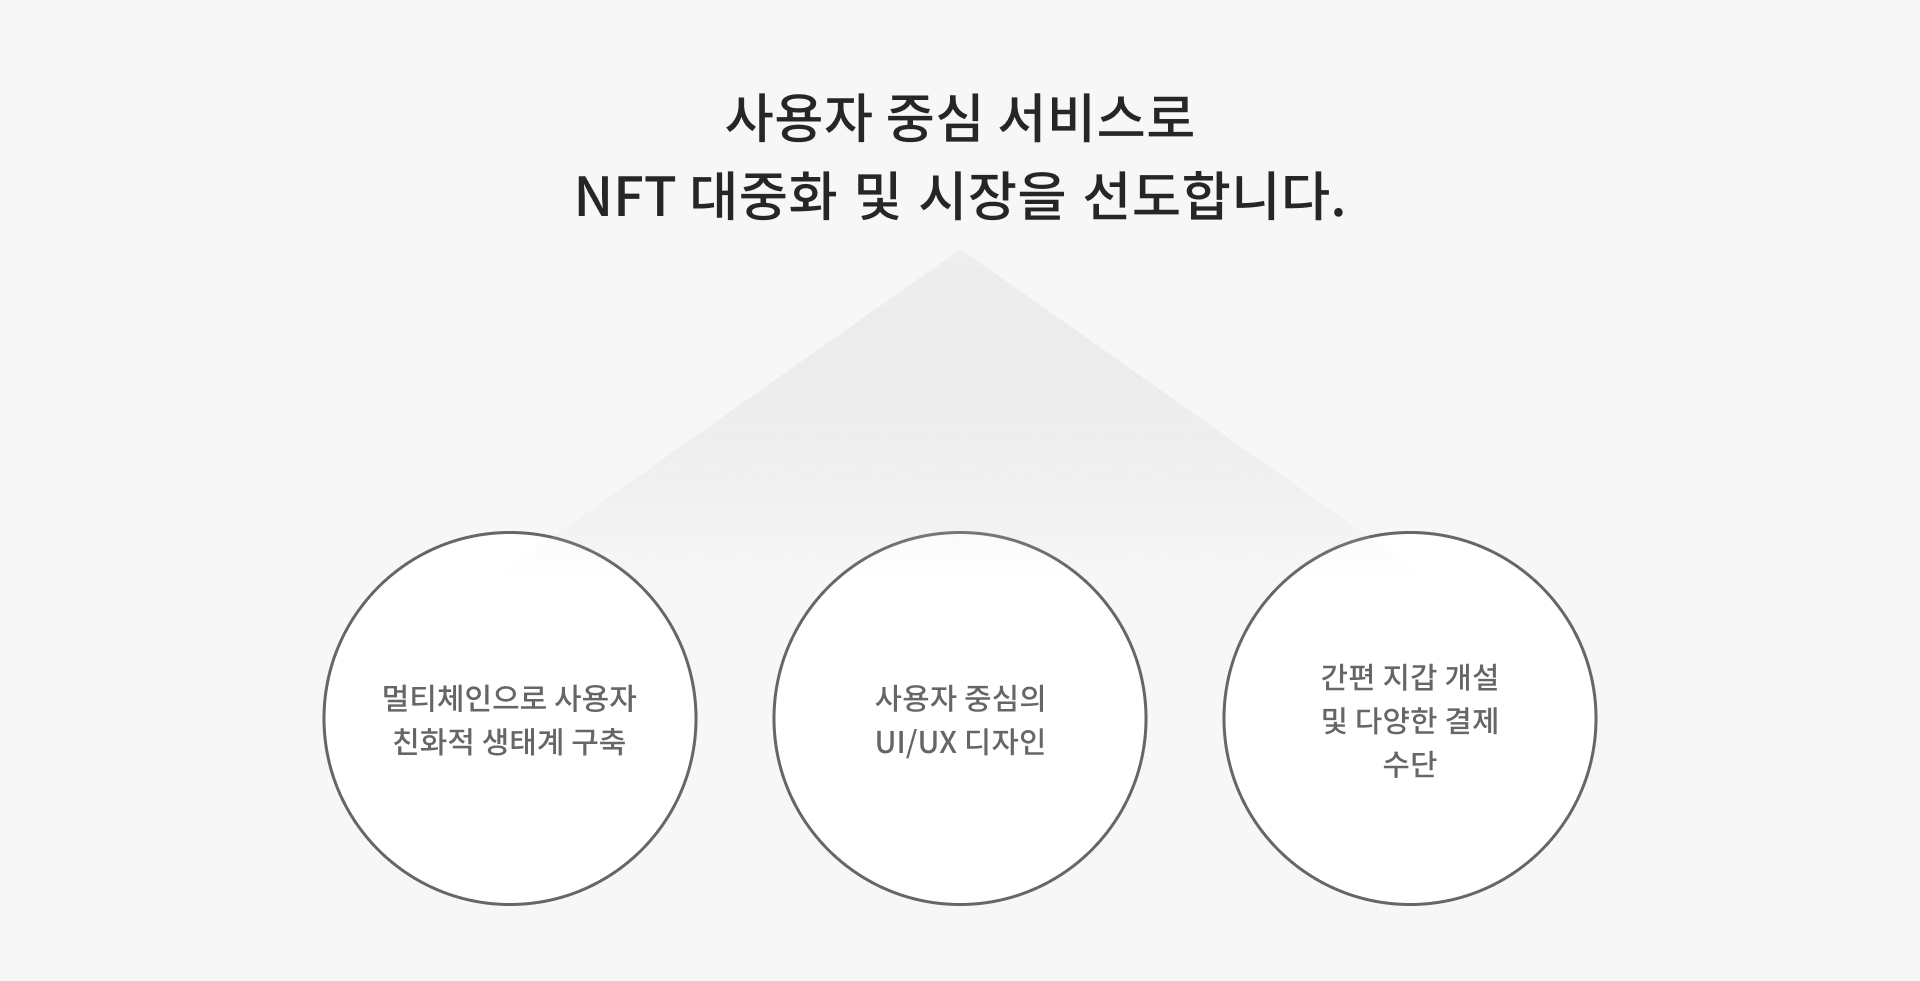 사용자 중심 서비스로 NFT 대중화 및 시장을 선도합니다.